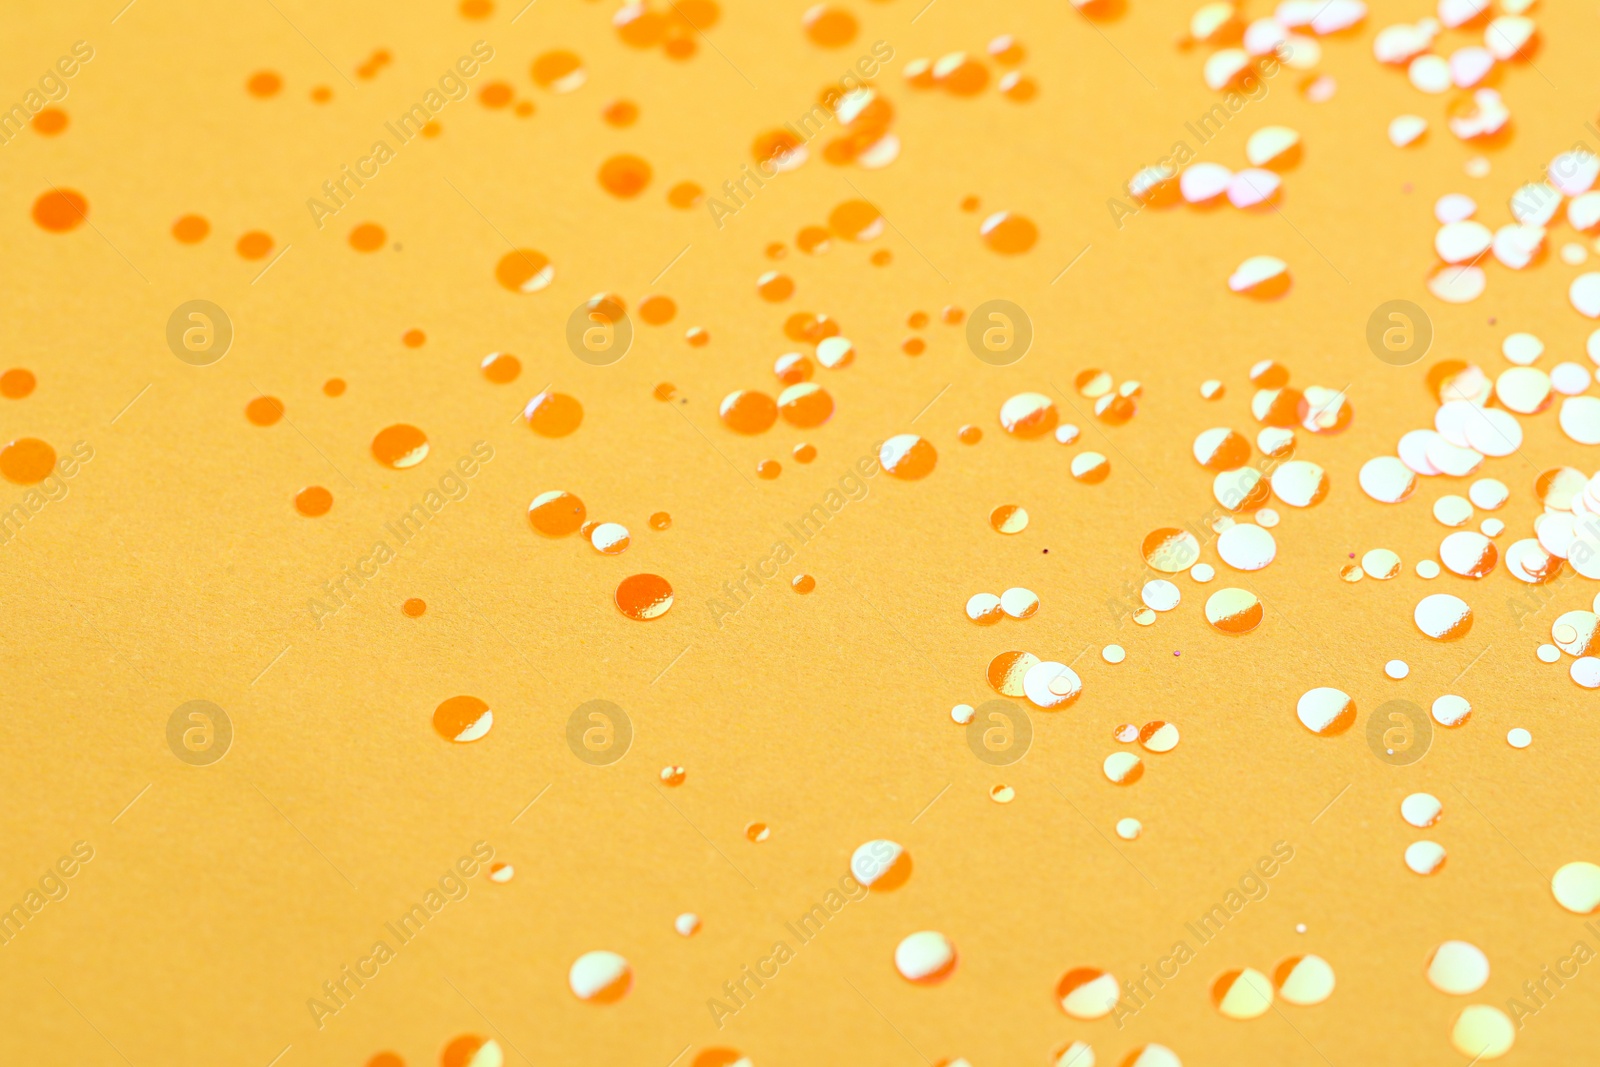 Photo of Shiny bright orange glitter on yellow background